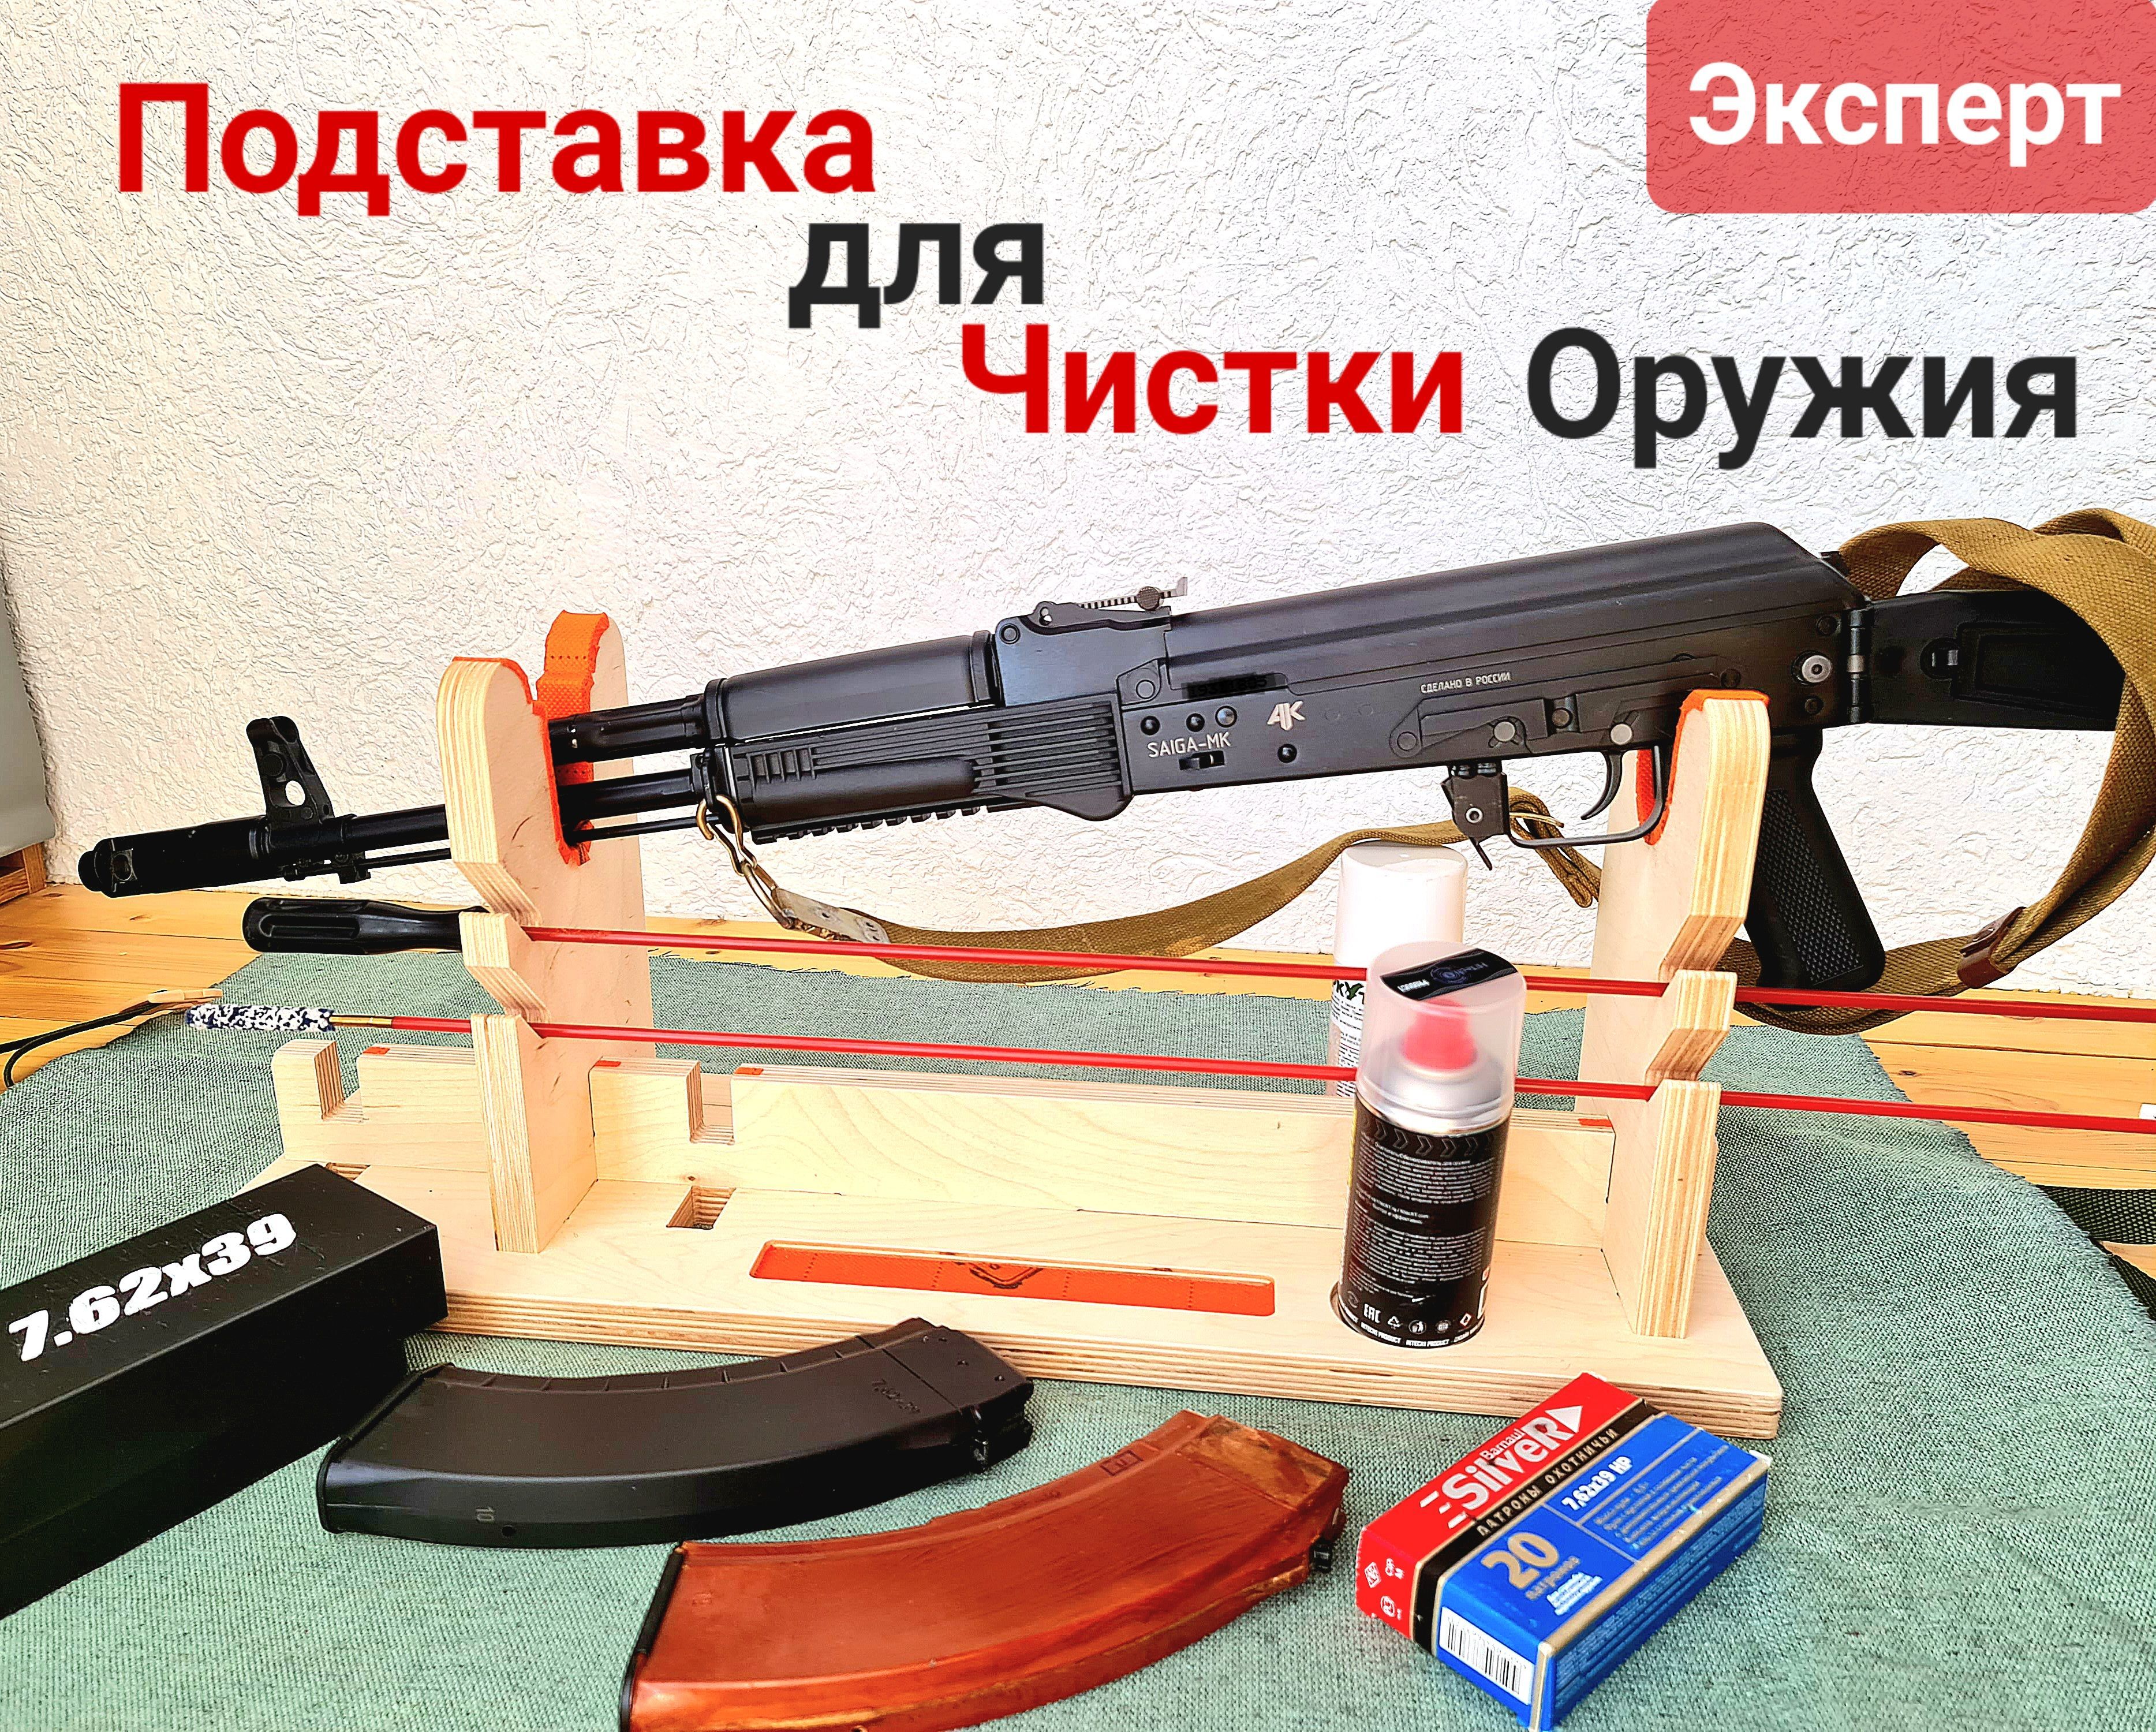 Оборудование для высокоточной стрельбы и работы с оружием